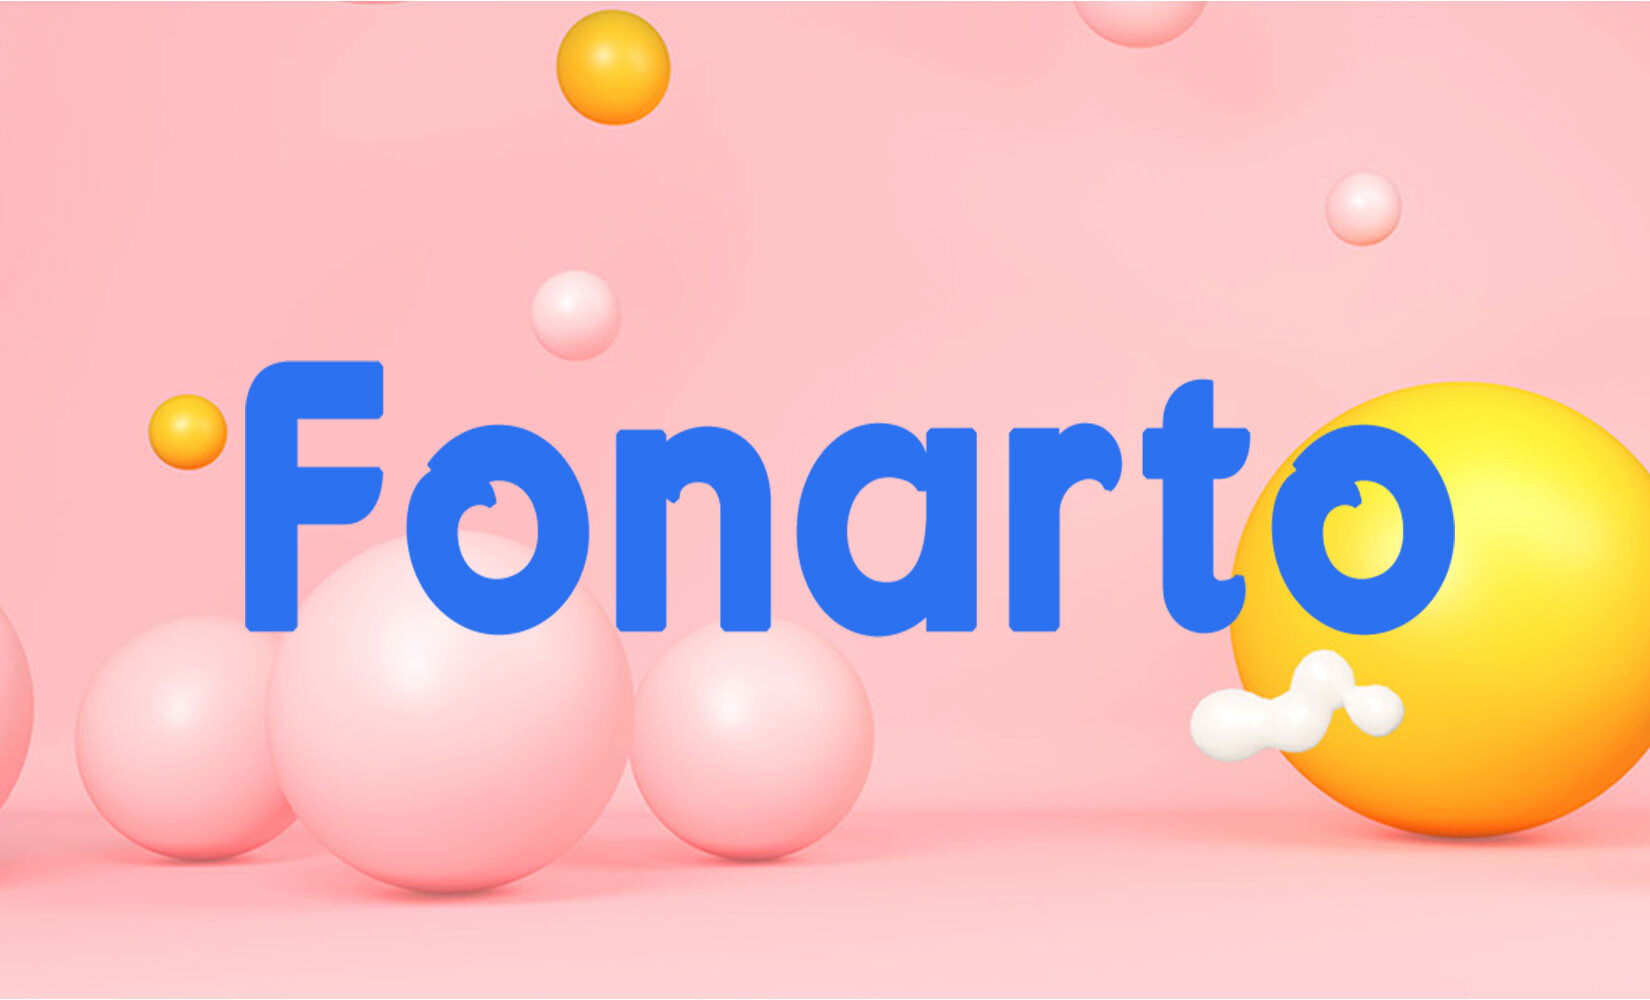 Fonarto经典无衬线字体